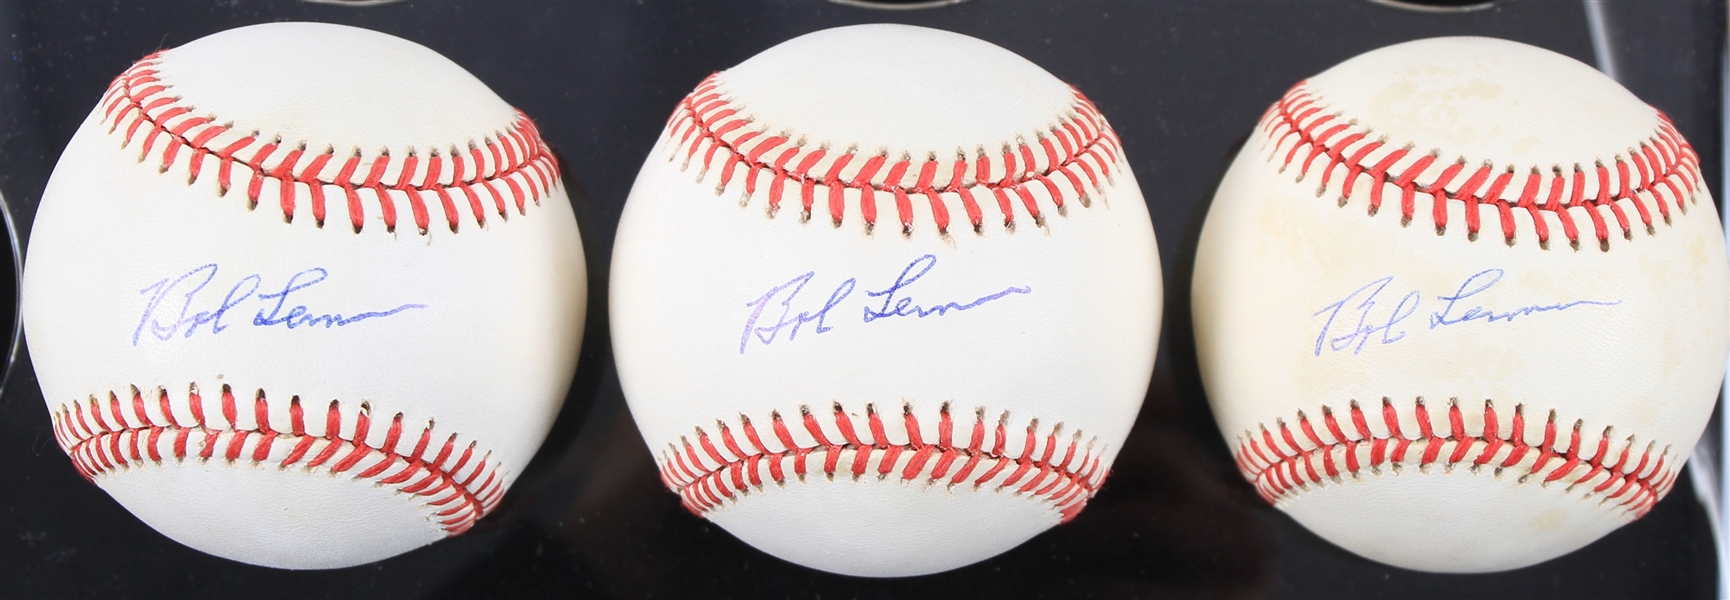 1990-92 Bob Lemon Cleveland Indians Signed OAL Brown Baseballs - Lot of 3 (JSA)